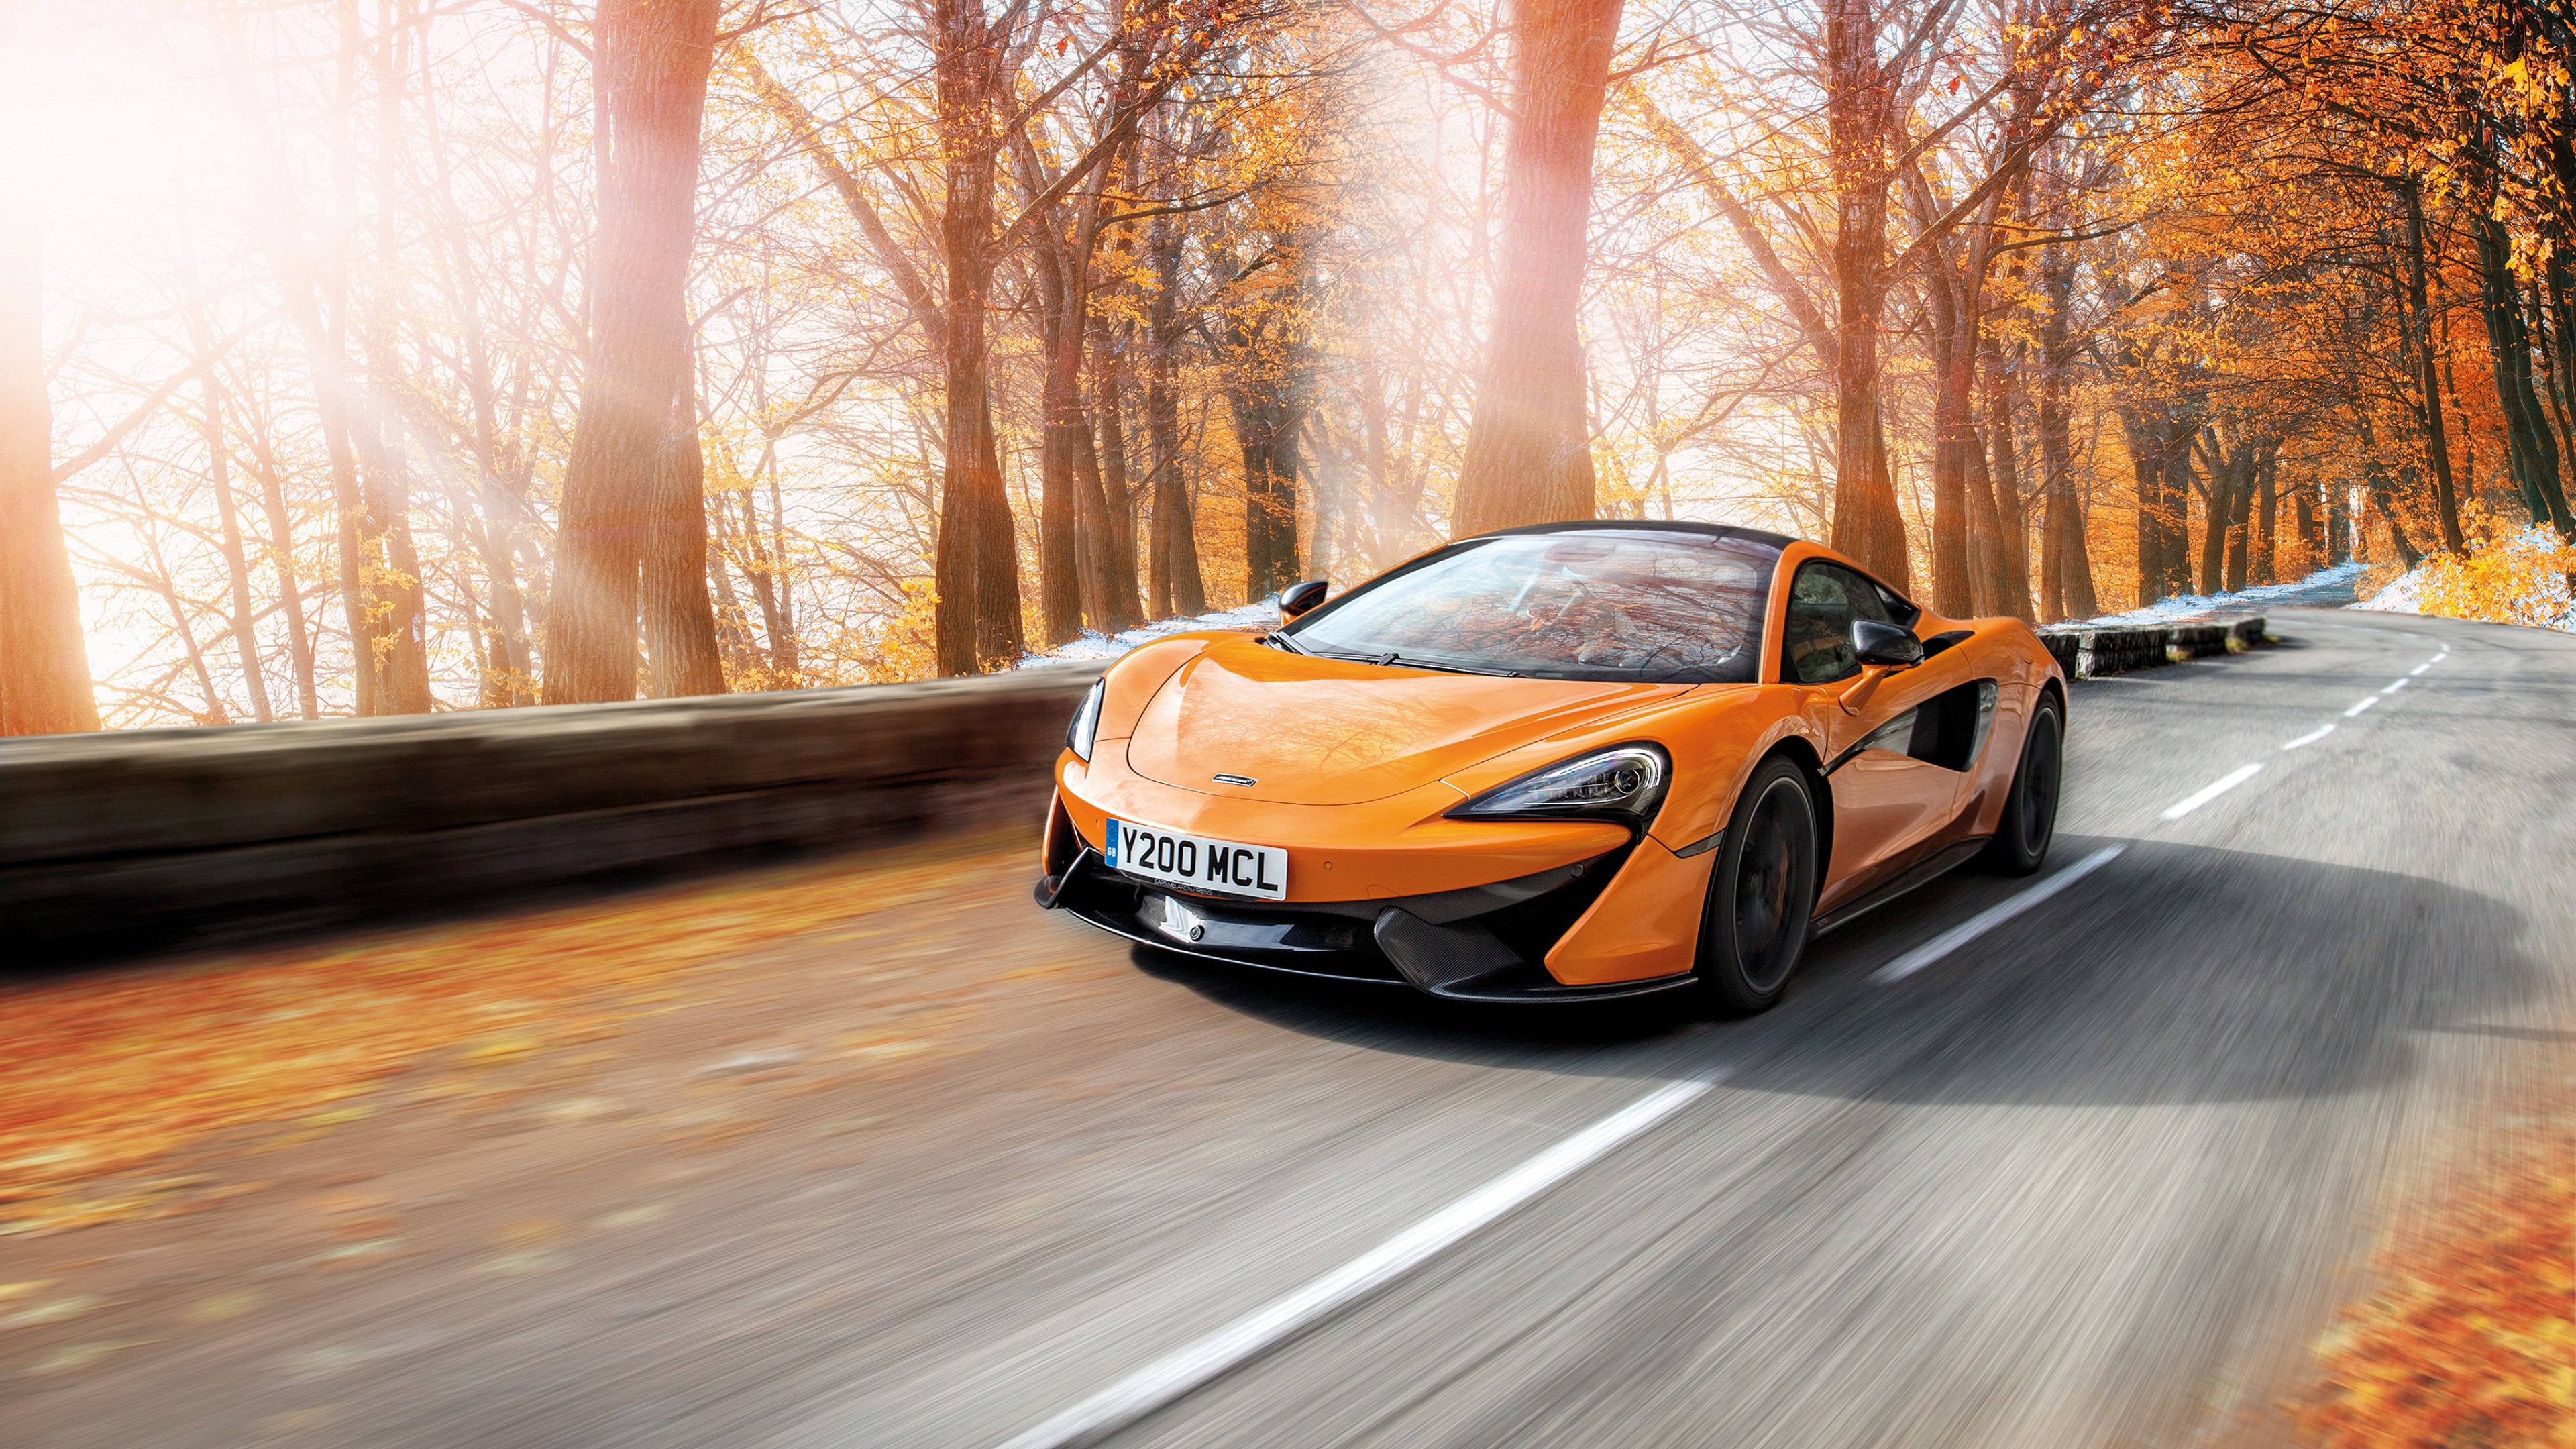 Download McLaren Cars Full HD Wallpaper for Desktop and ...